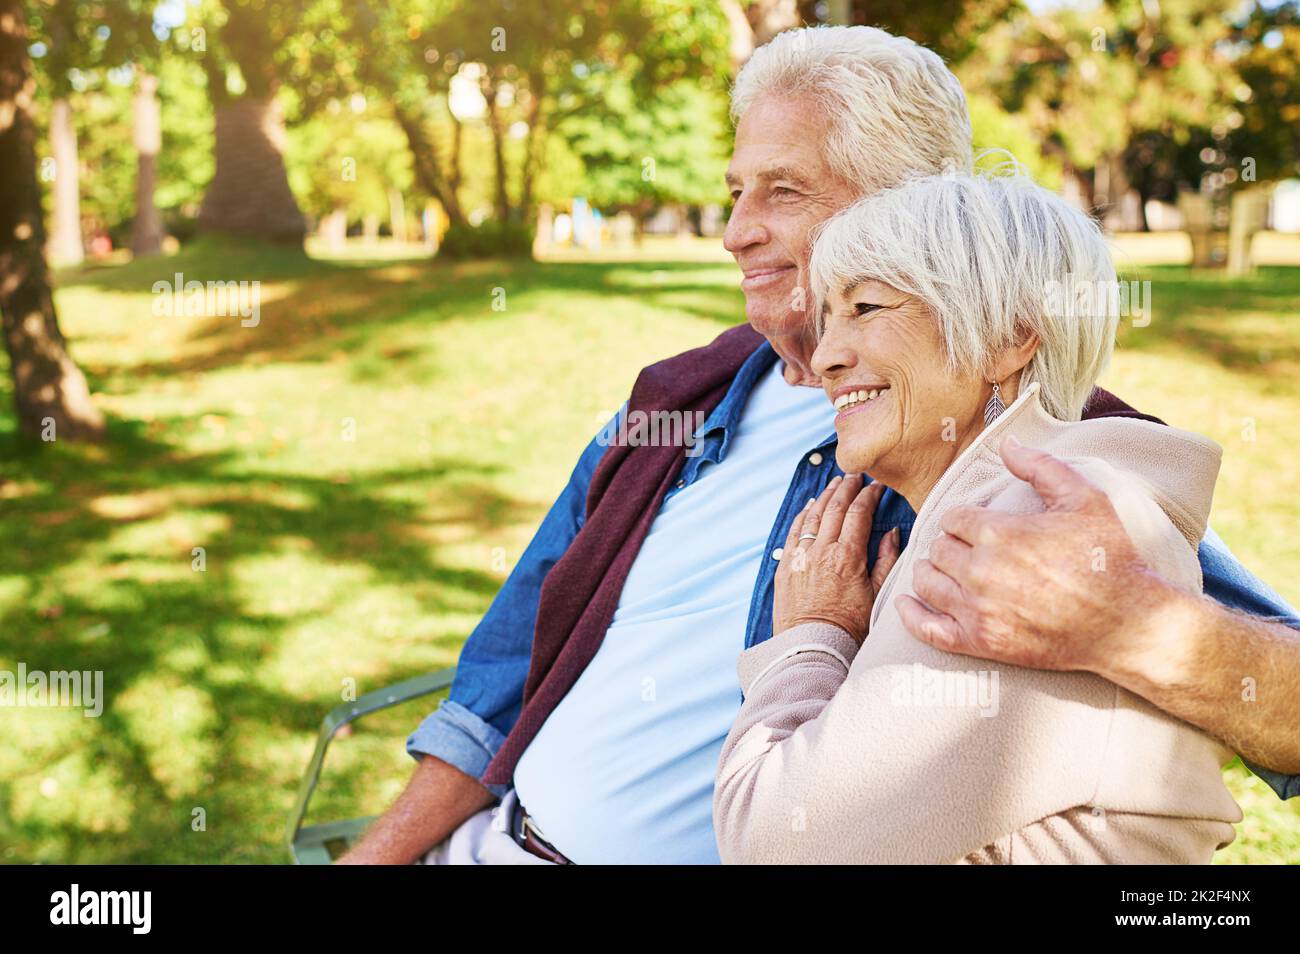 Un engagement qui dure toute une vie. Photo d'un couple senior heureux dans le parc. Banque D'Images